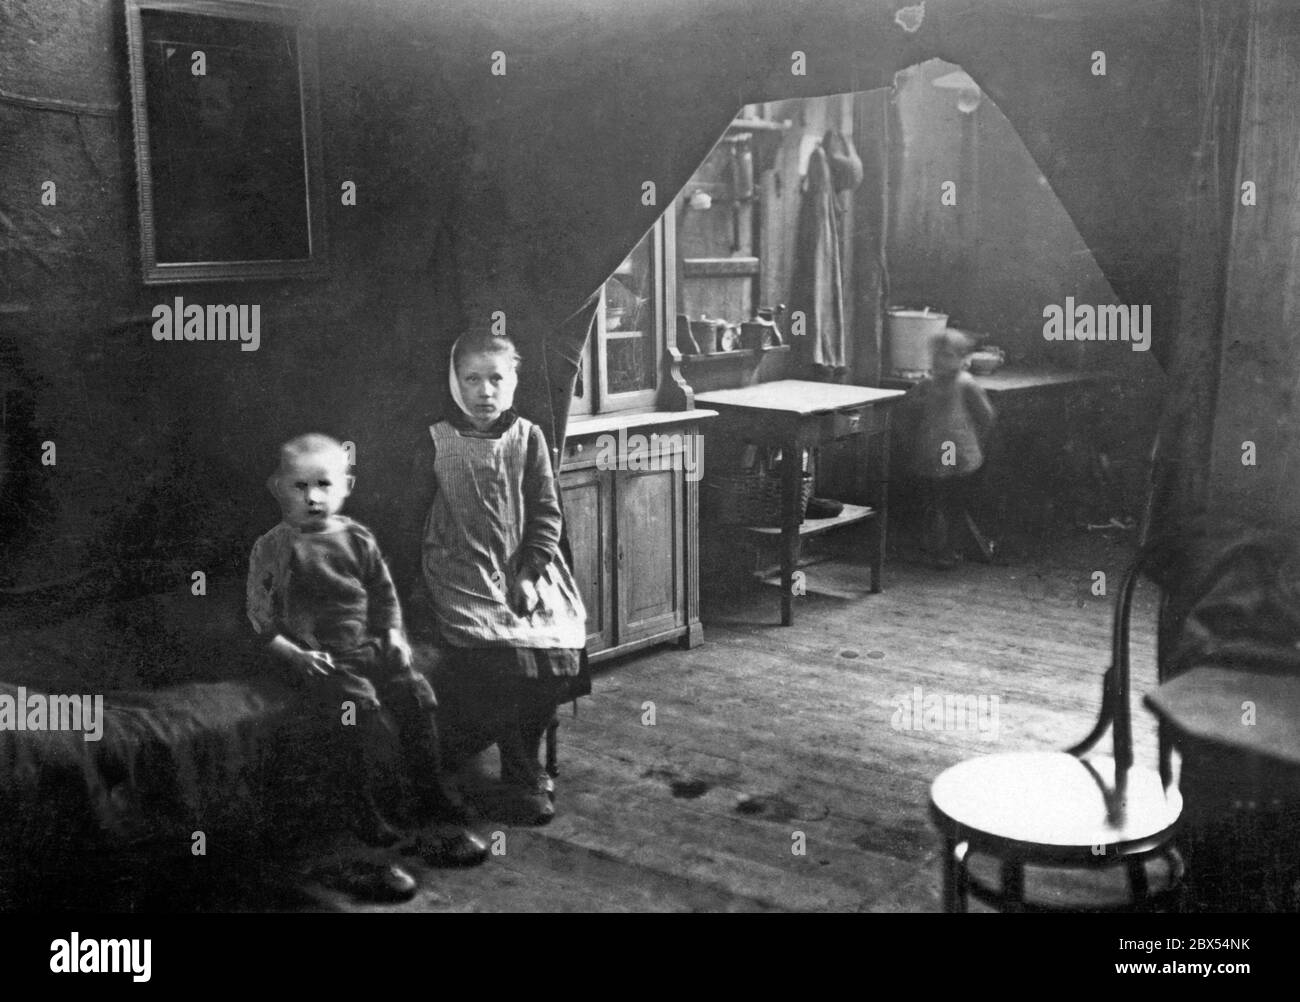 Due bambini si siedono su un letto in una casa buia. Alla loro destra è la cucina in cui un altro bambino (offuscato) sta in piedi. La cucina e la zona notte sono separate da tende. A causa dell'occupazione francese, nella regione del Reno-Ruhr vi era una carenza di alloggi. Foto Stock